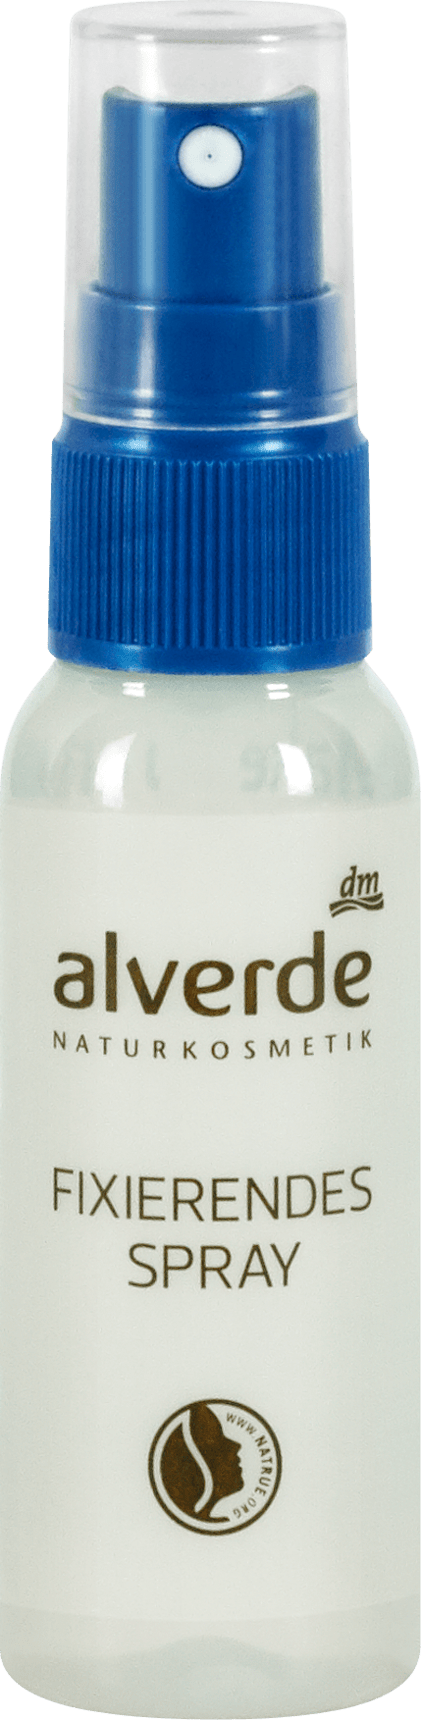 alverde NATURKOSMETIK fixation spray for makeup, 50 ml